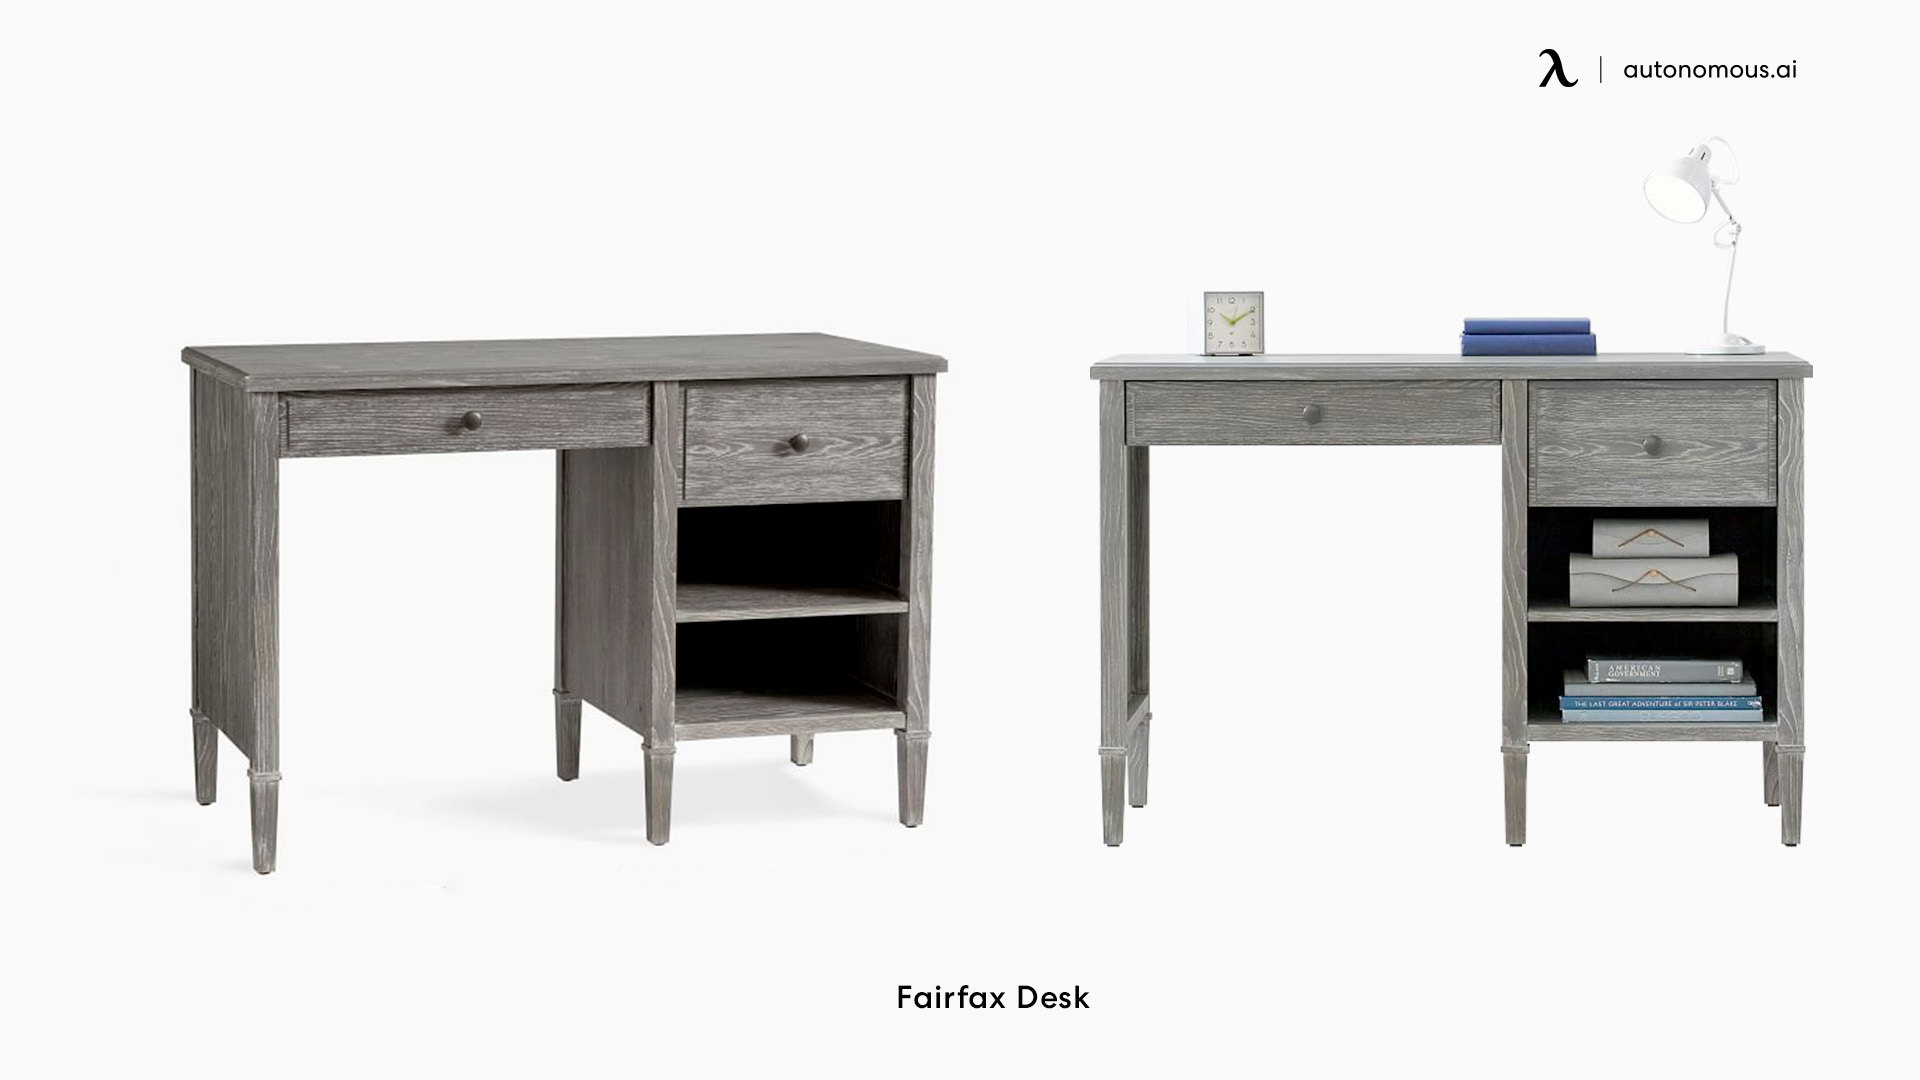 Fairfax Desk small desk space